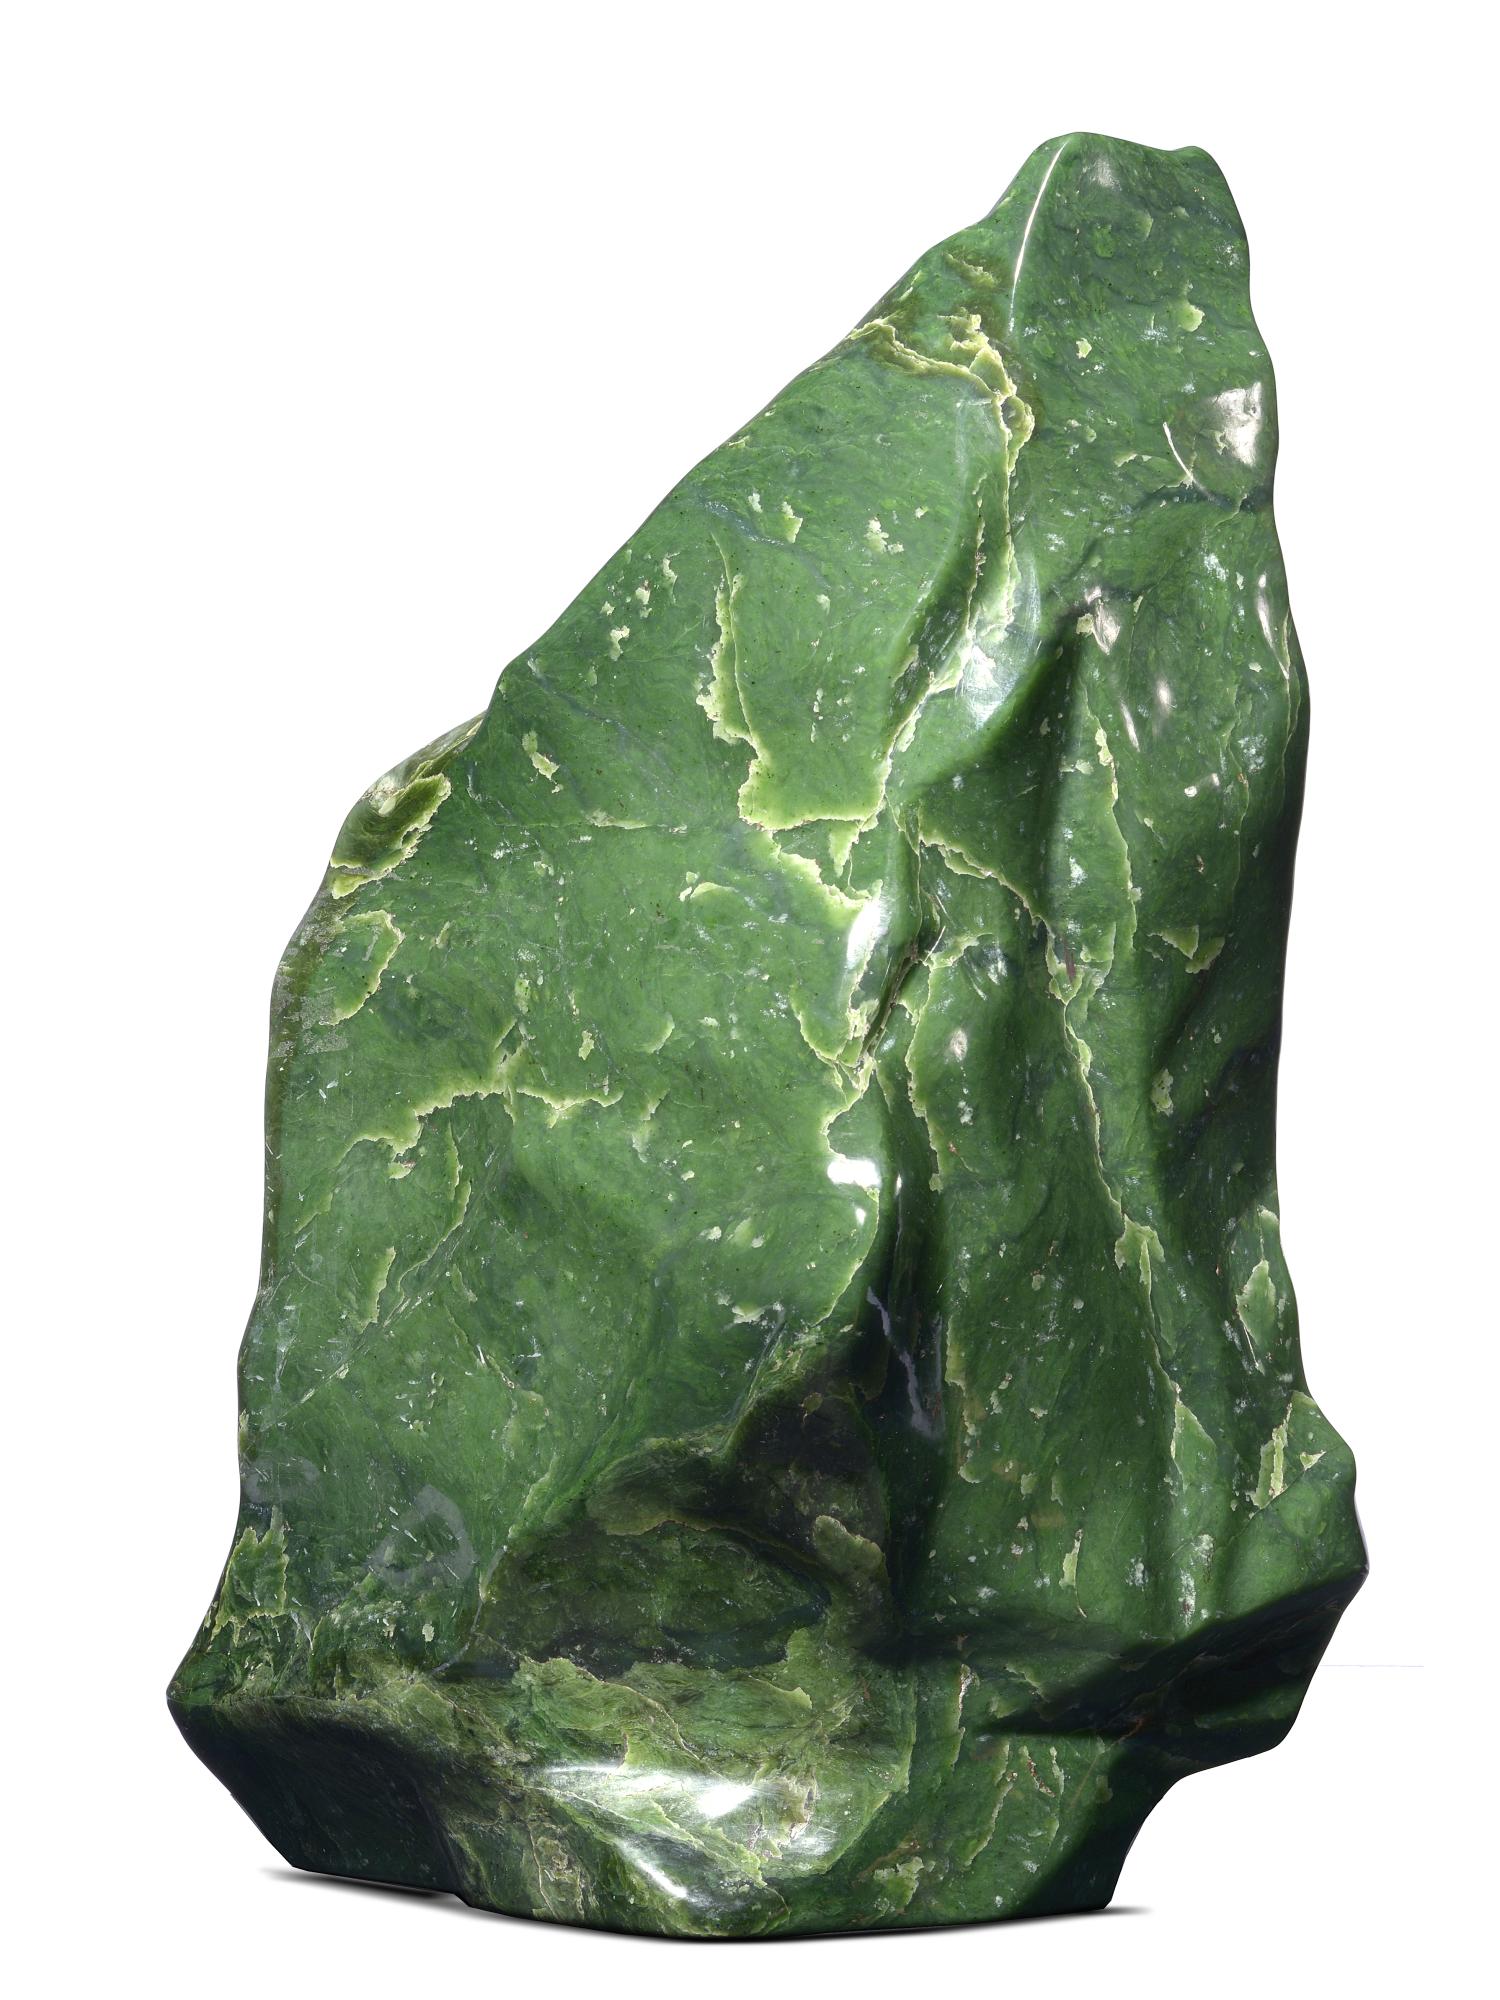 A nephrite freeform 68cm high, 47.5kg